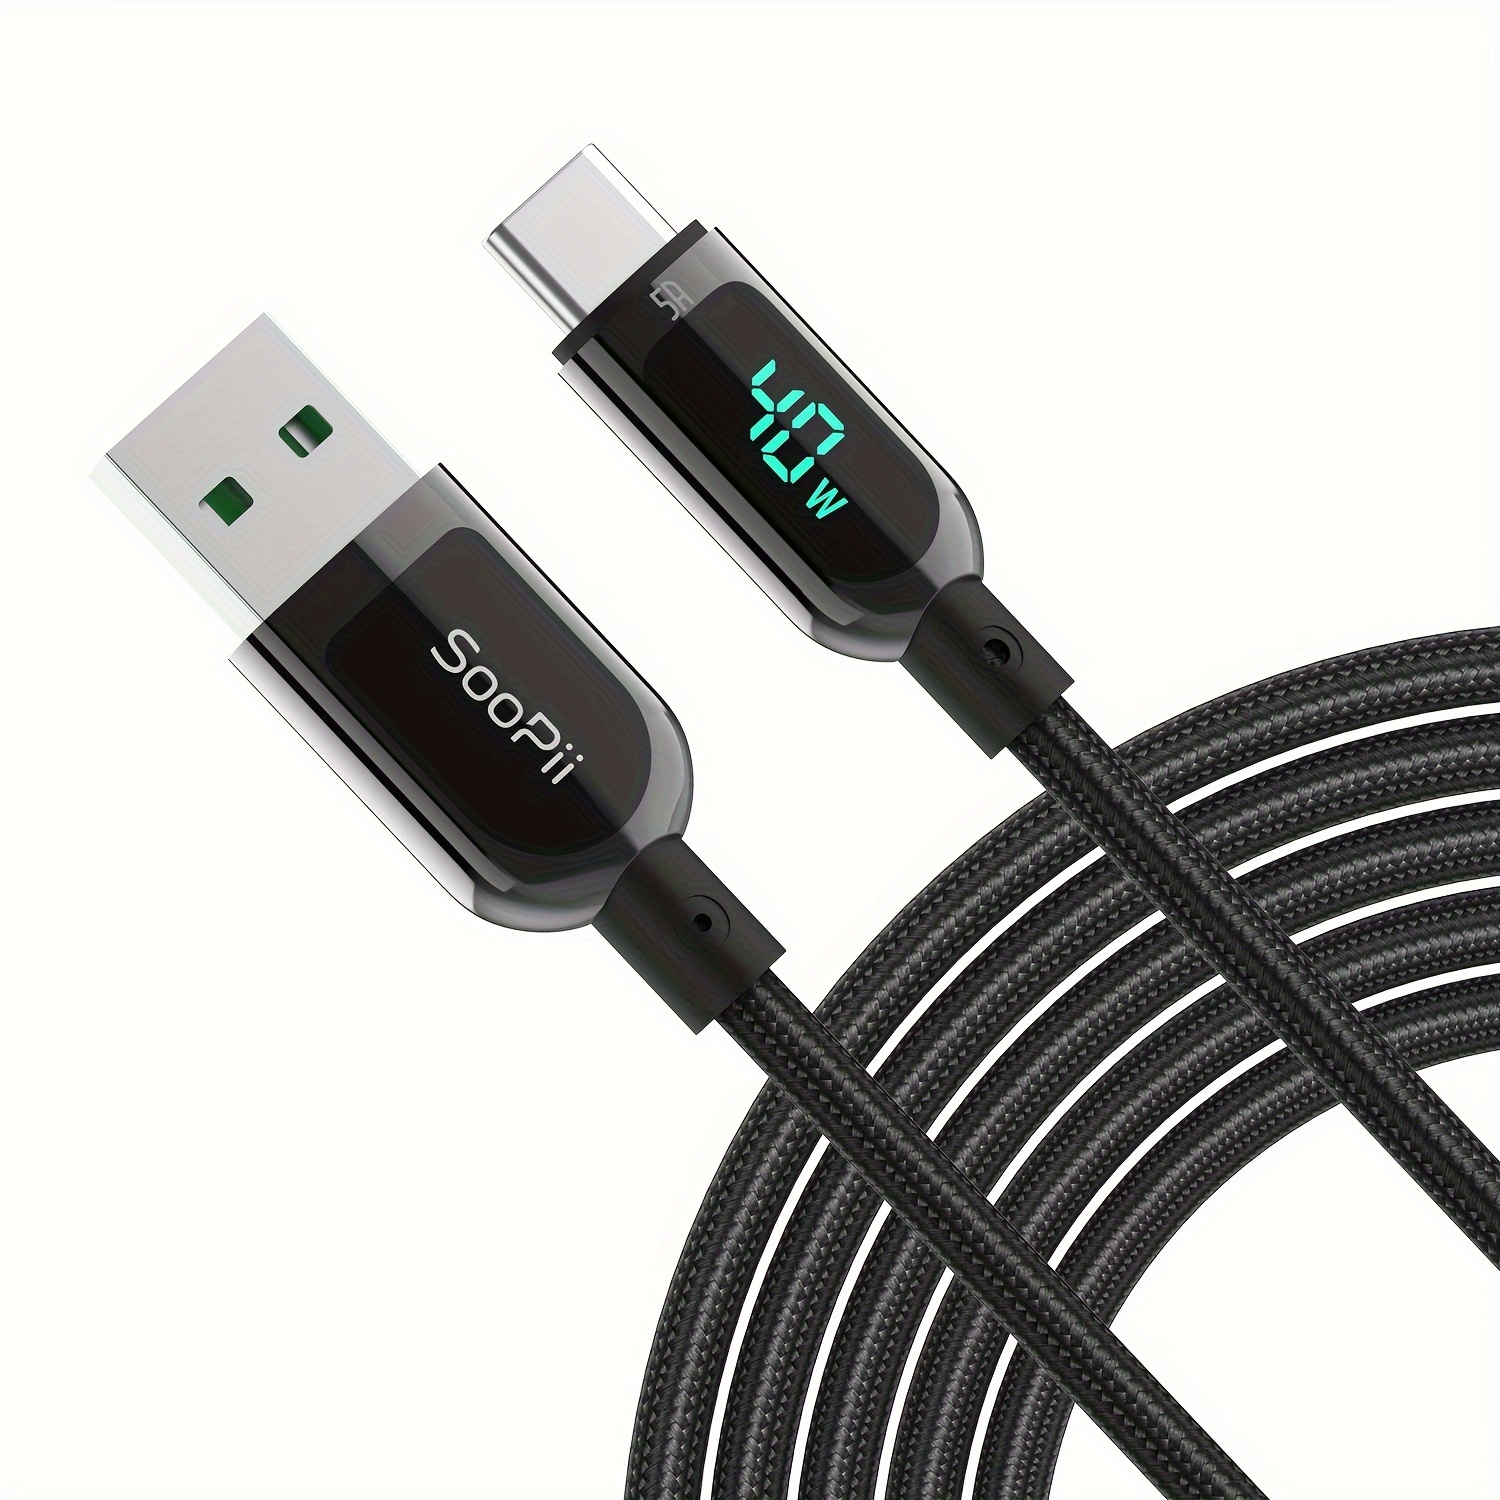 Baseus – Câble USB LED pour Recharge Rapide, Cordon de Chargeur